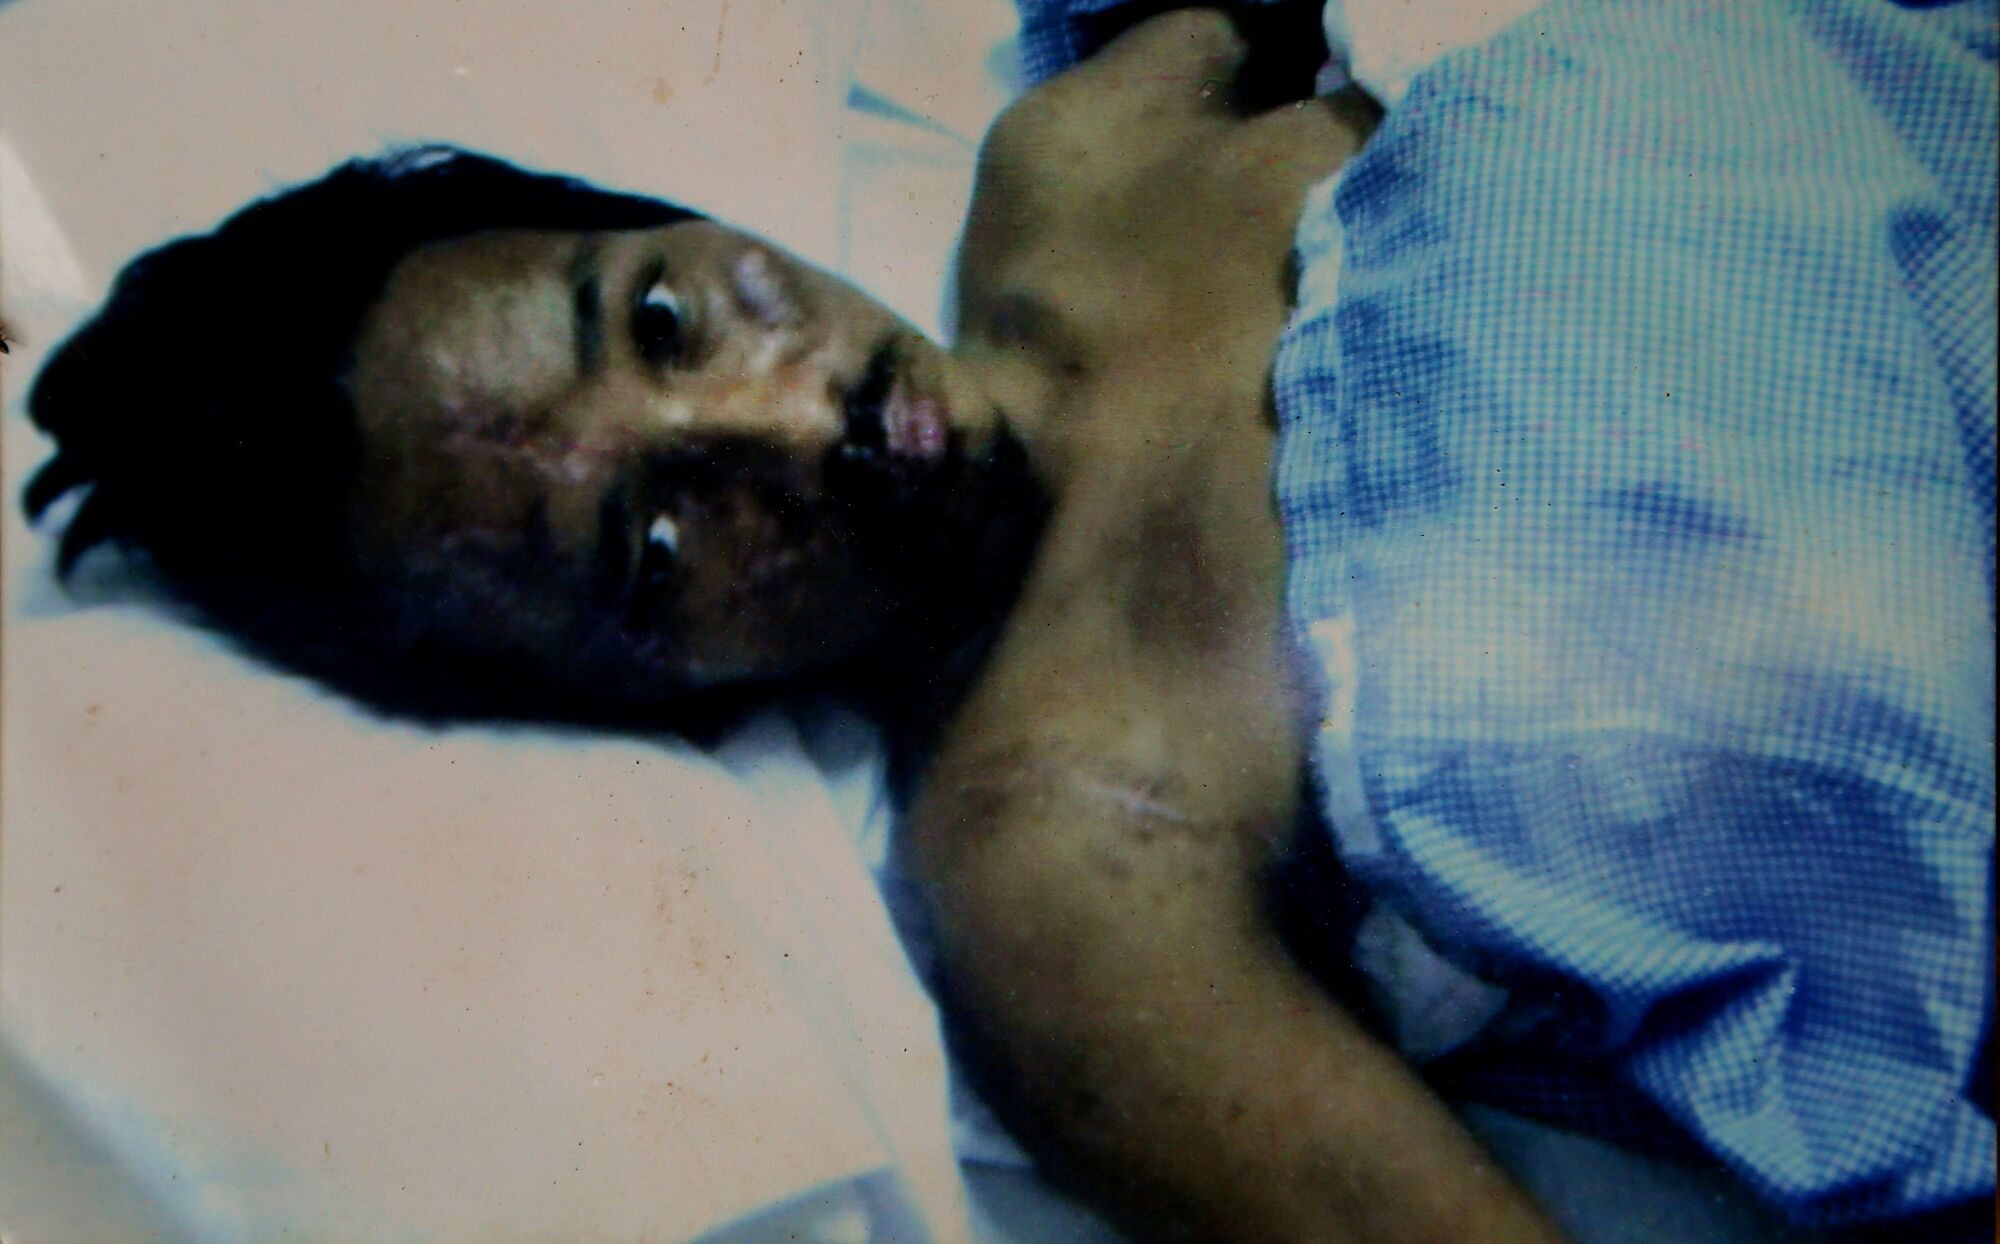 A man lies in a hospital bed under a blue sheet